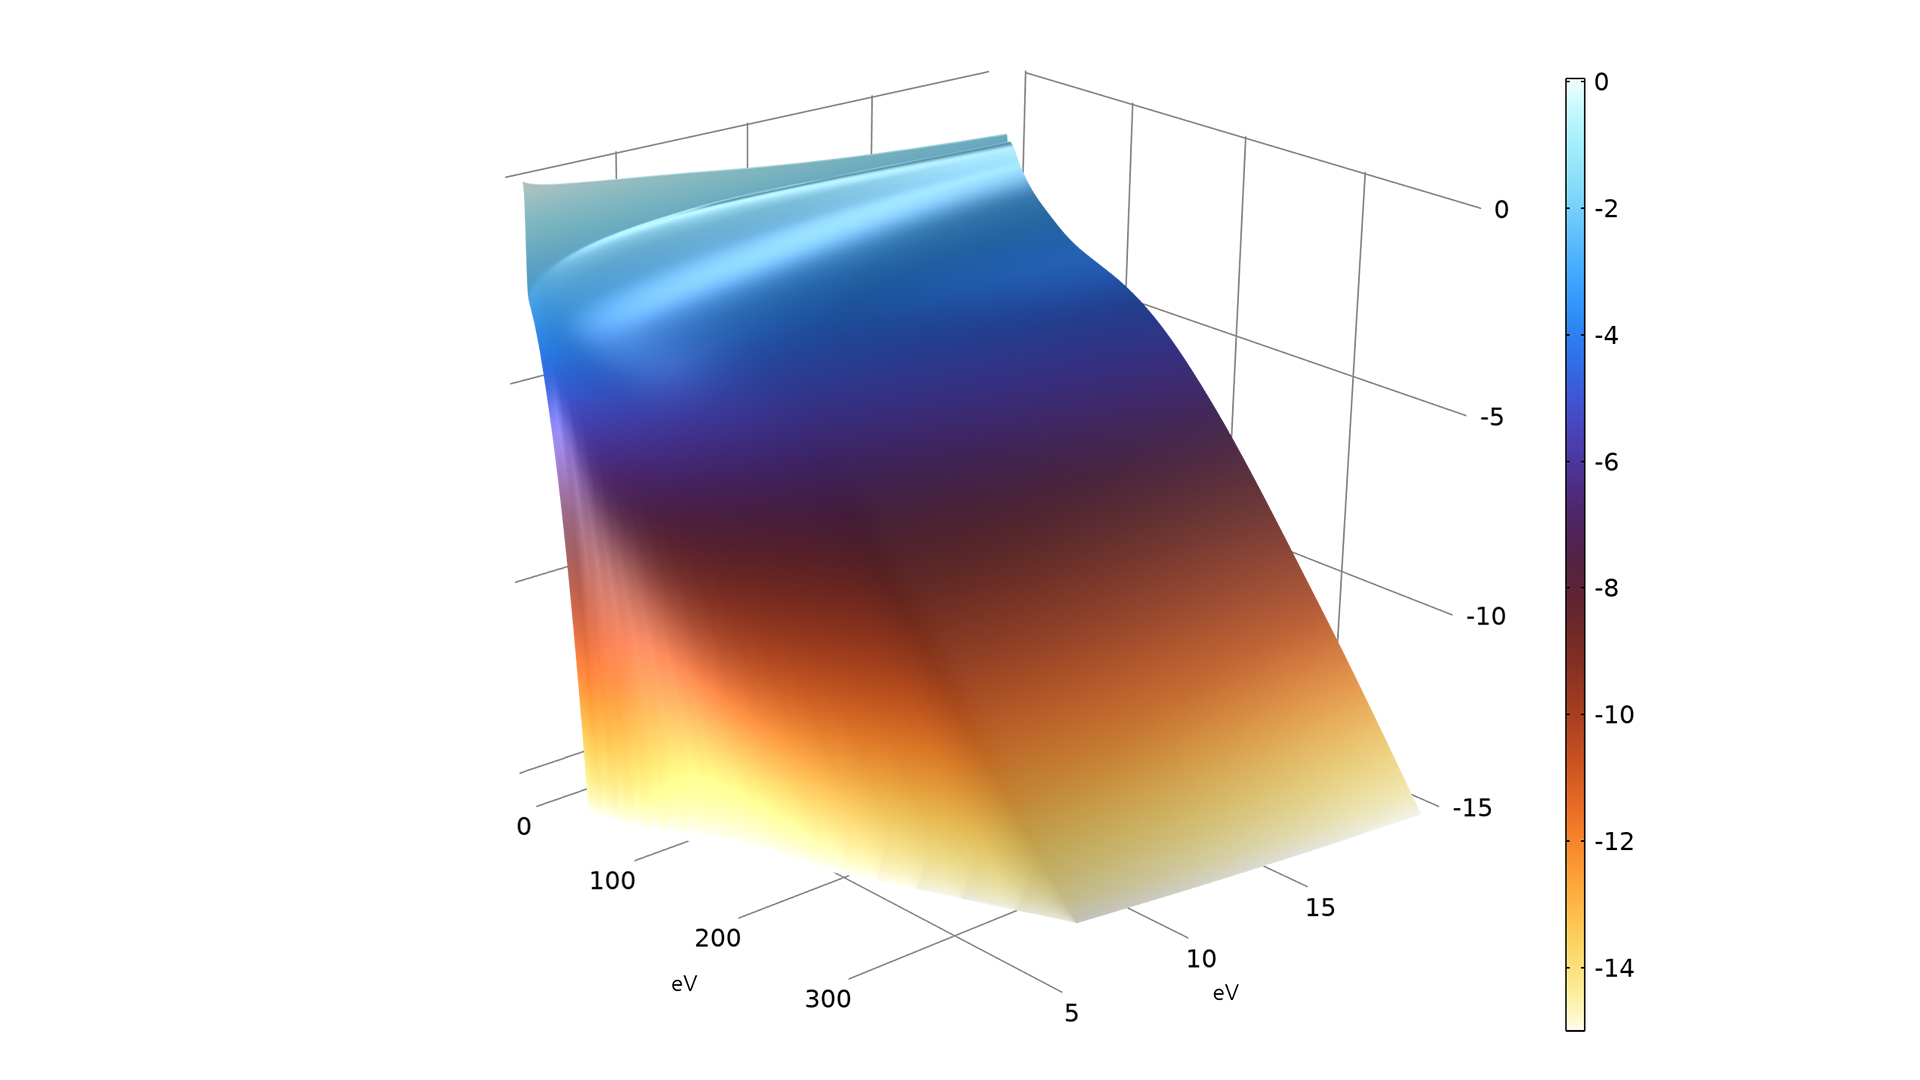 以 Thermal Wave 颜色表显示的干空气模型。